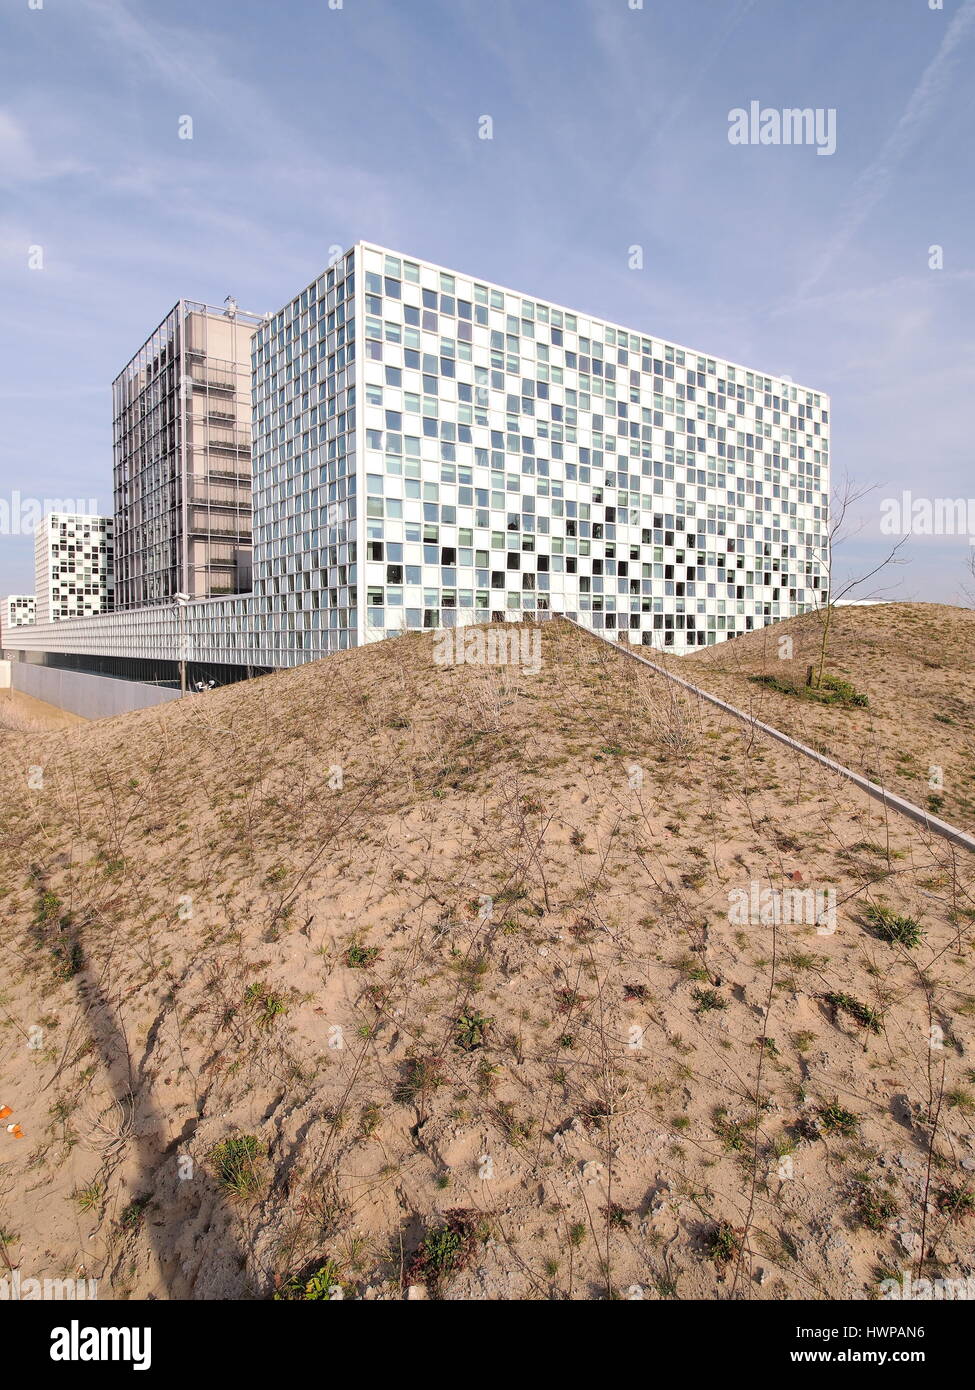 Den Haag, Niederlande - 27. März 2016: Der neue internationale Strafgerichtshof 2015 eröffnete Gebäude. Stockfoto